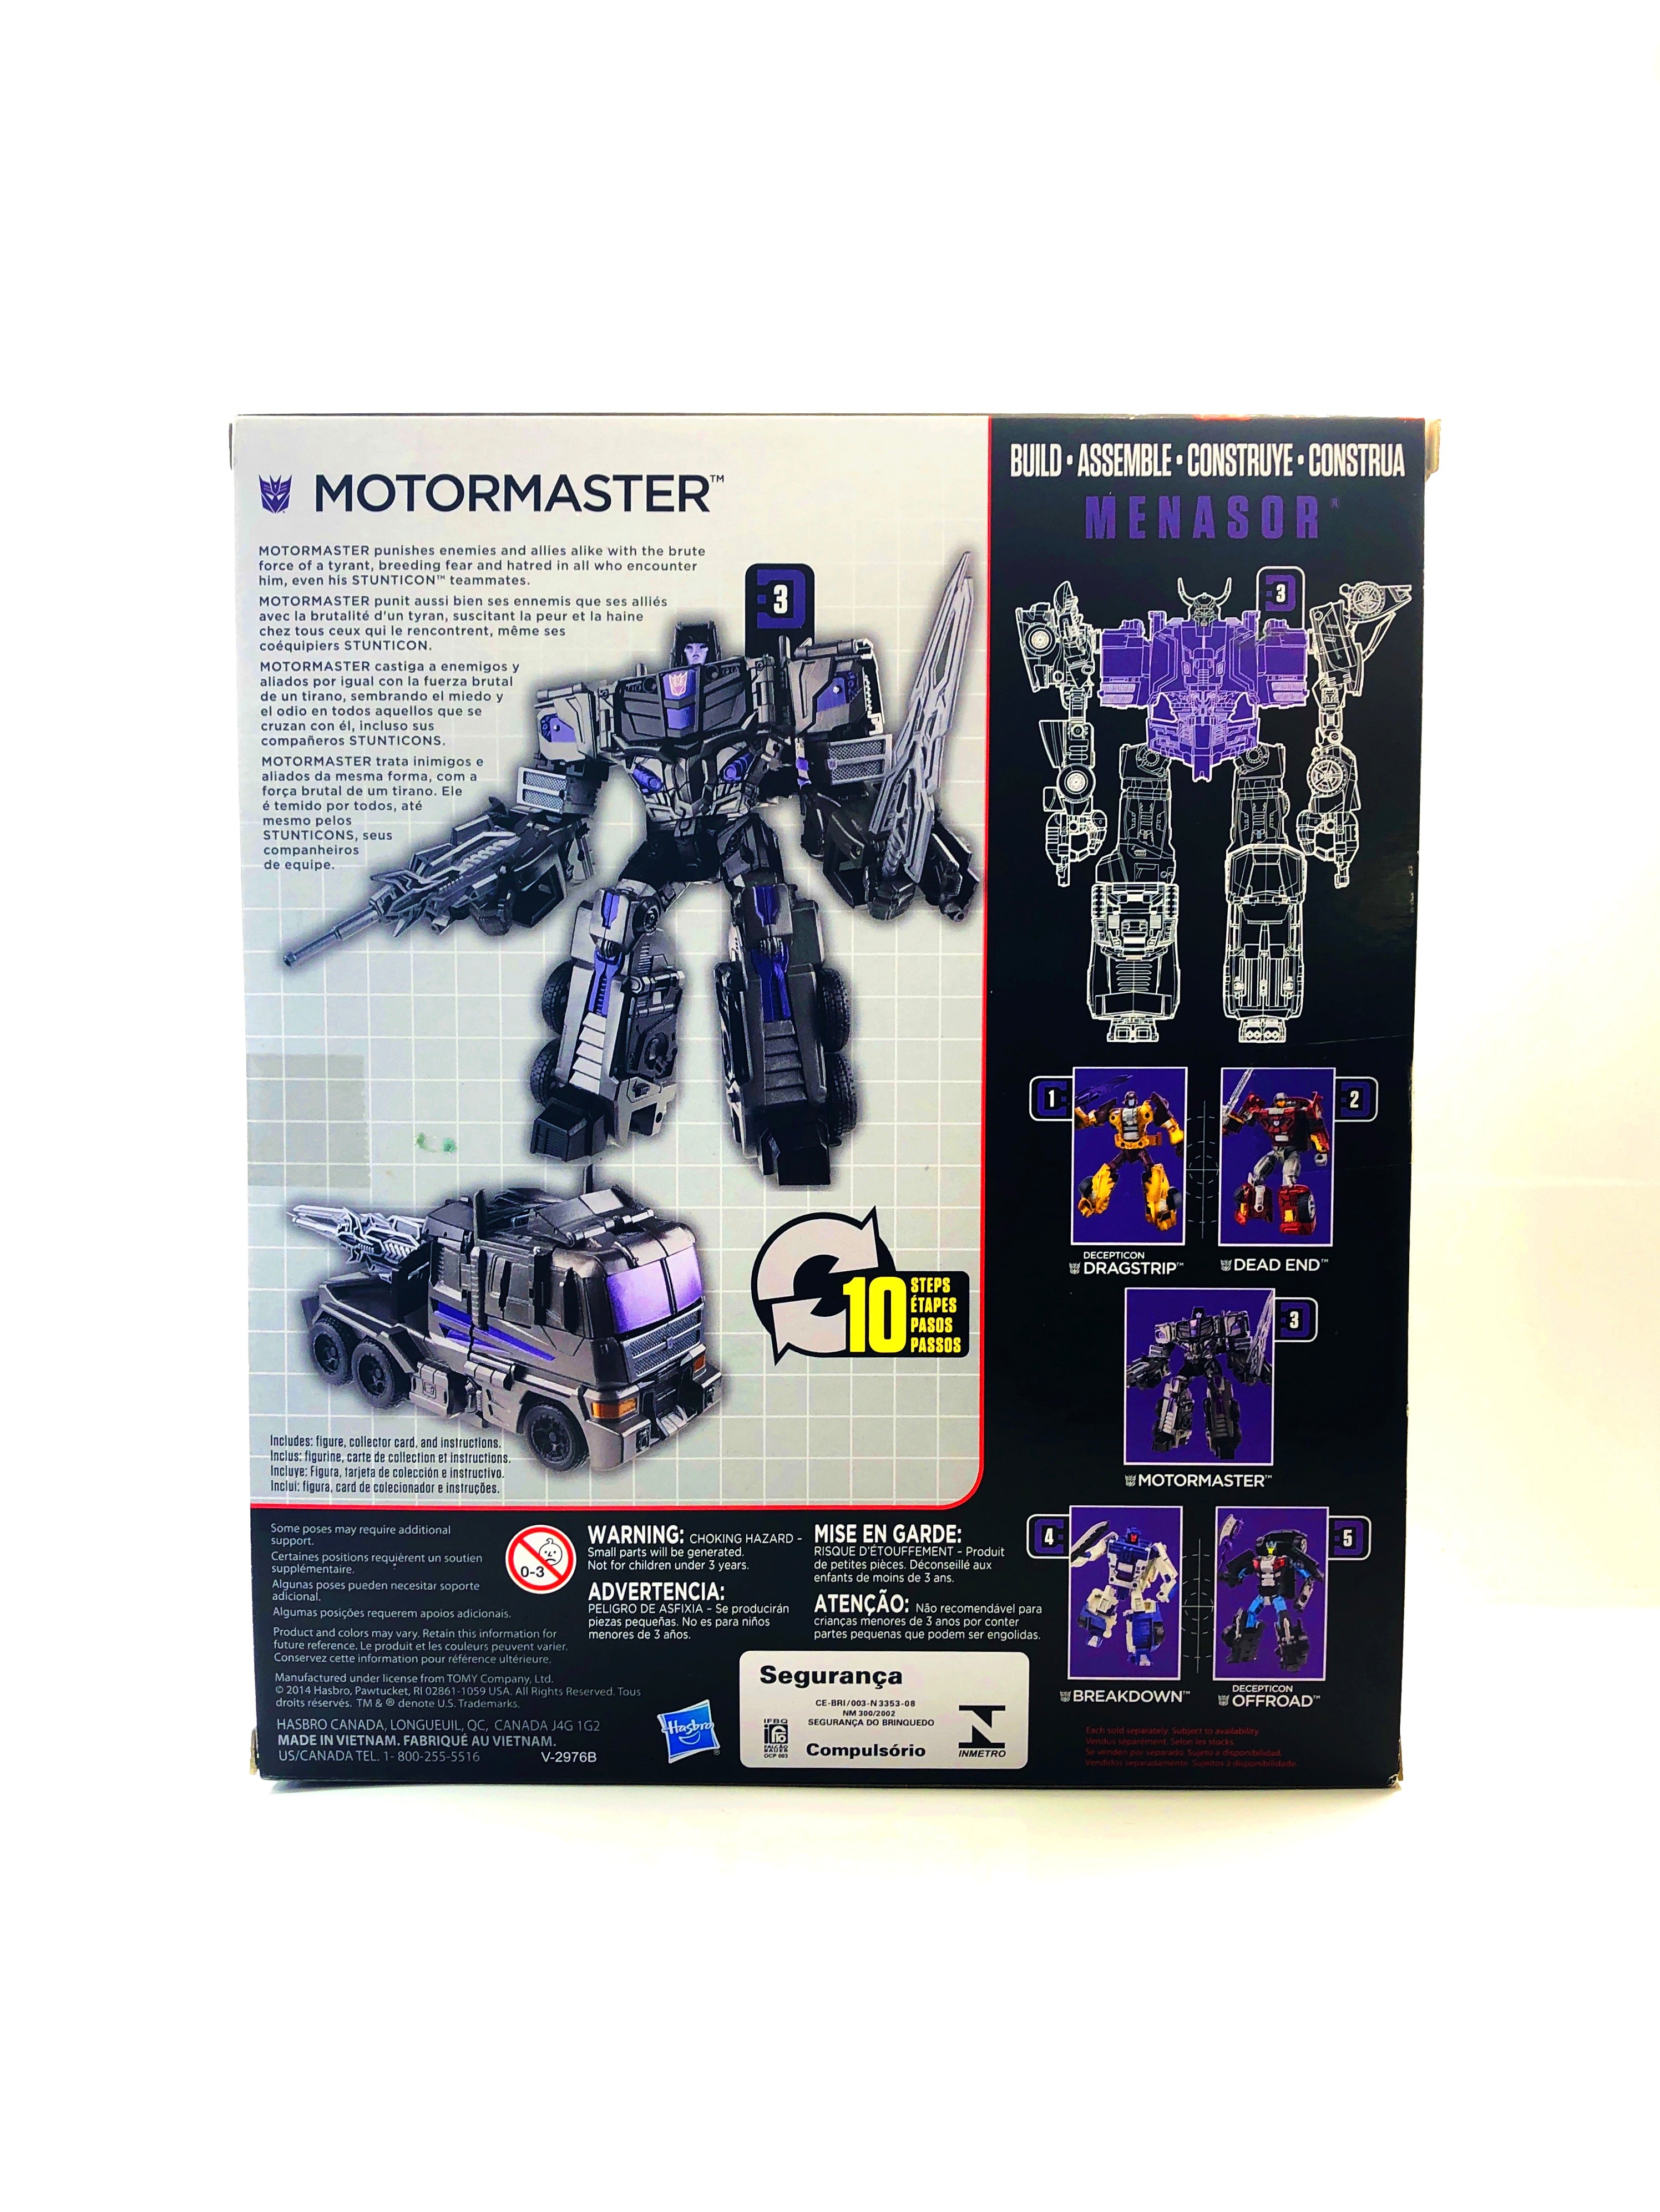 Transformers Combiner Wars: Voyager Motormaster